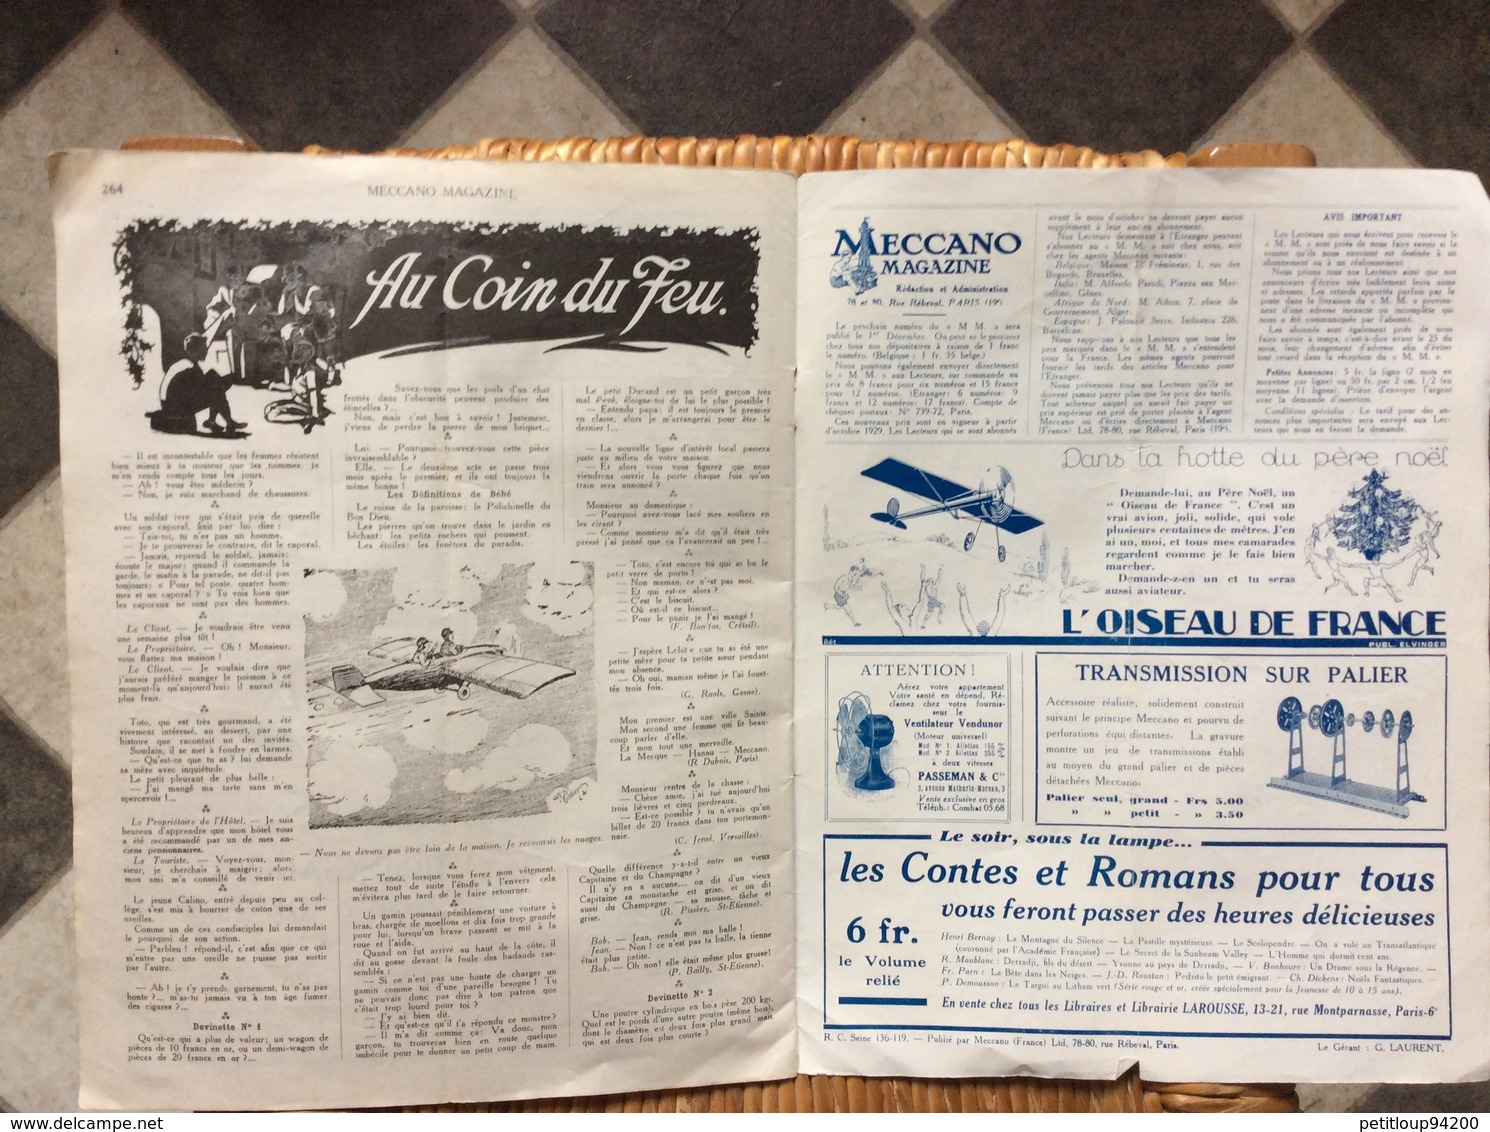 MECCANO MAGAZINE No11 Novembre 1930